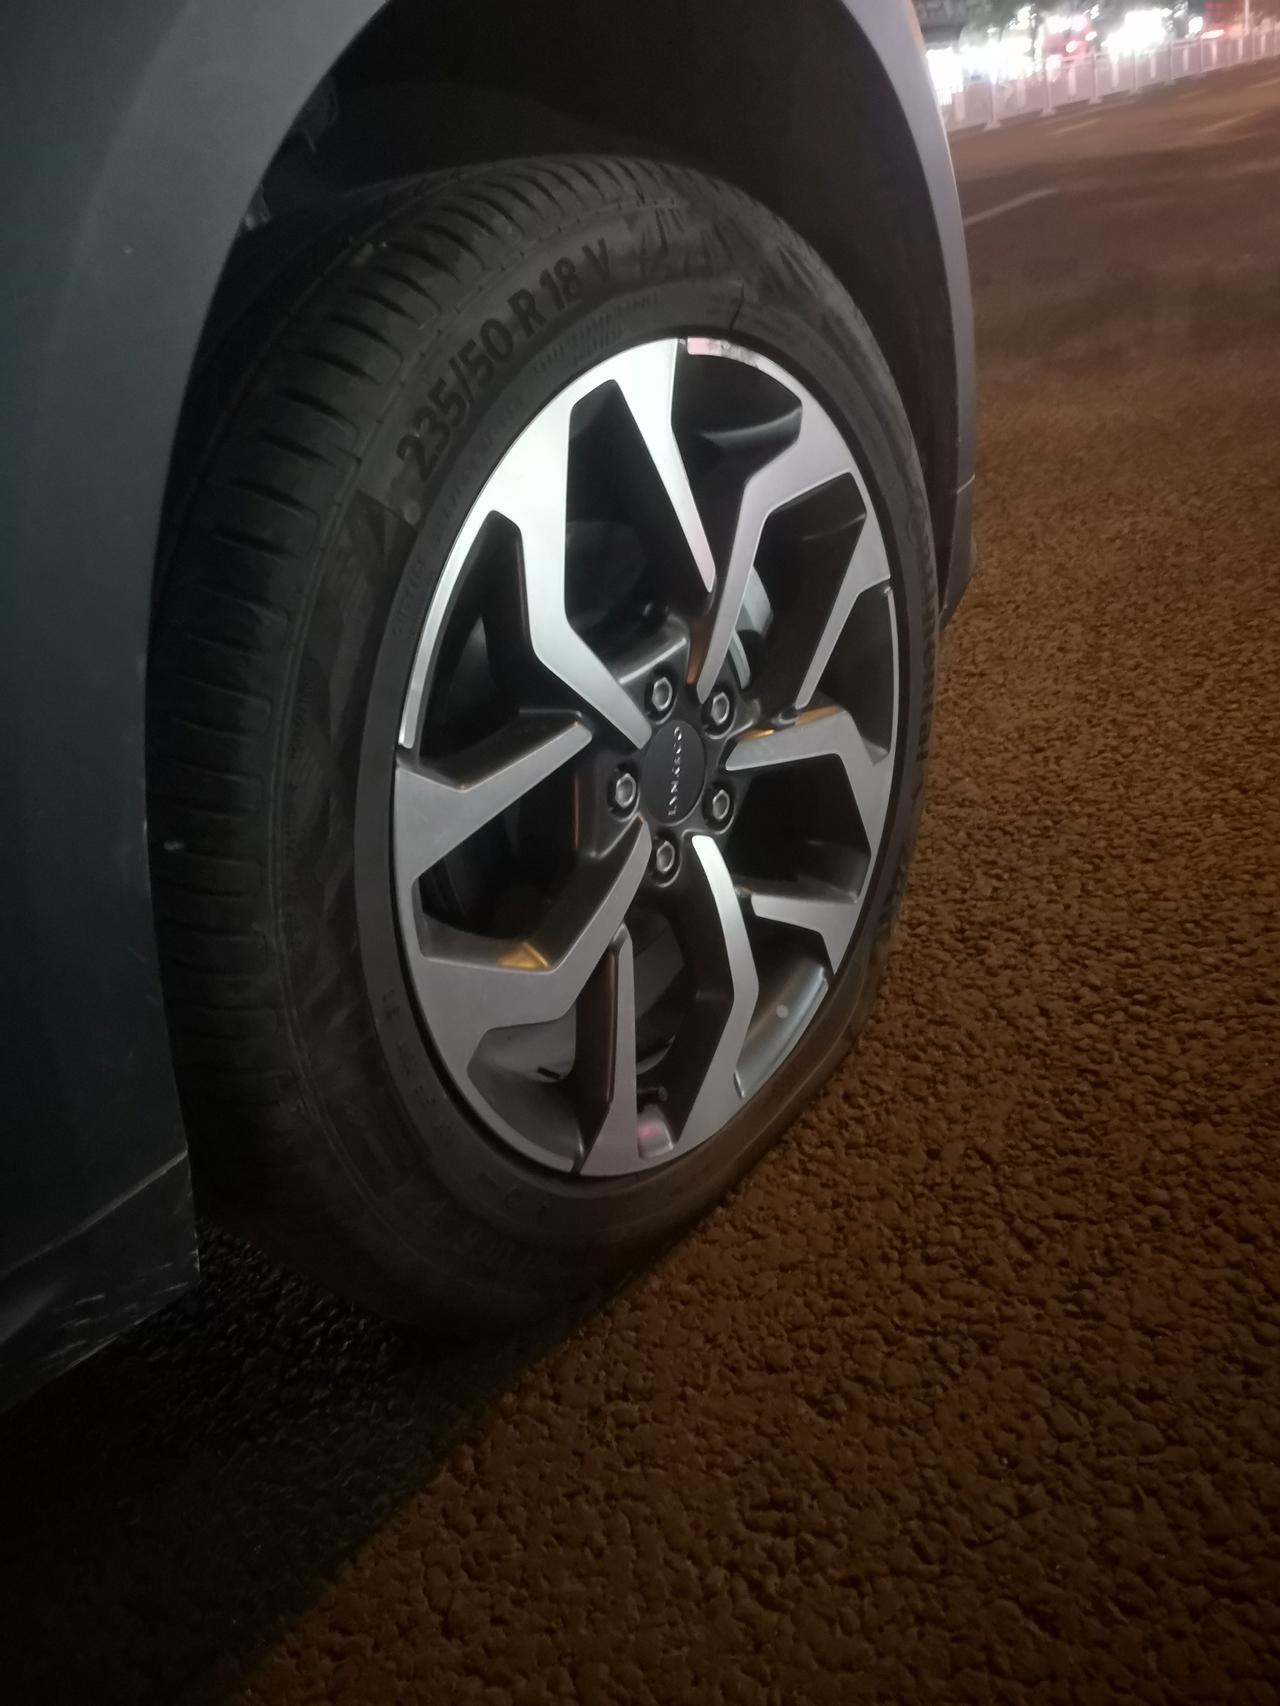 2019款领克02 2.0高能劲 的轮胎有链接吗？爆了一个轮胎。。。。